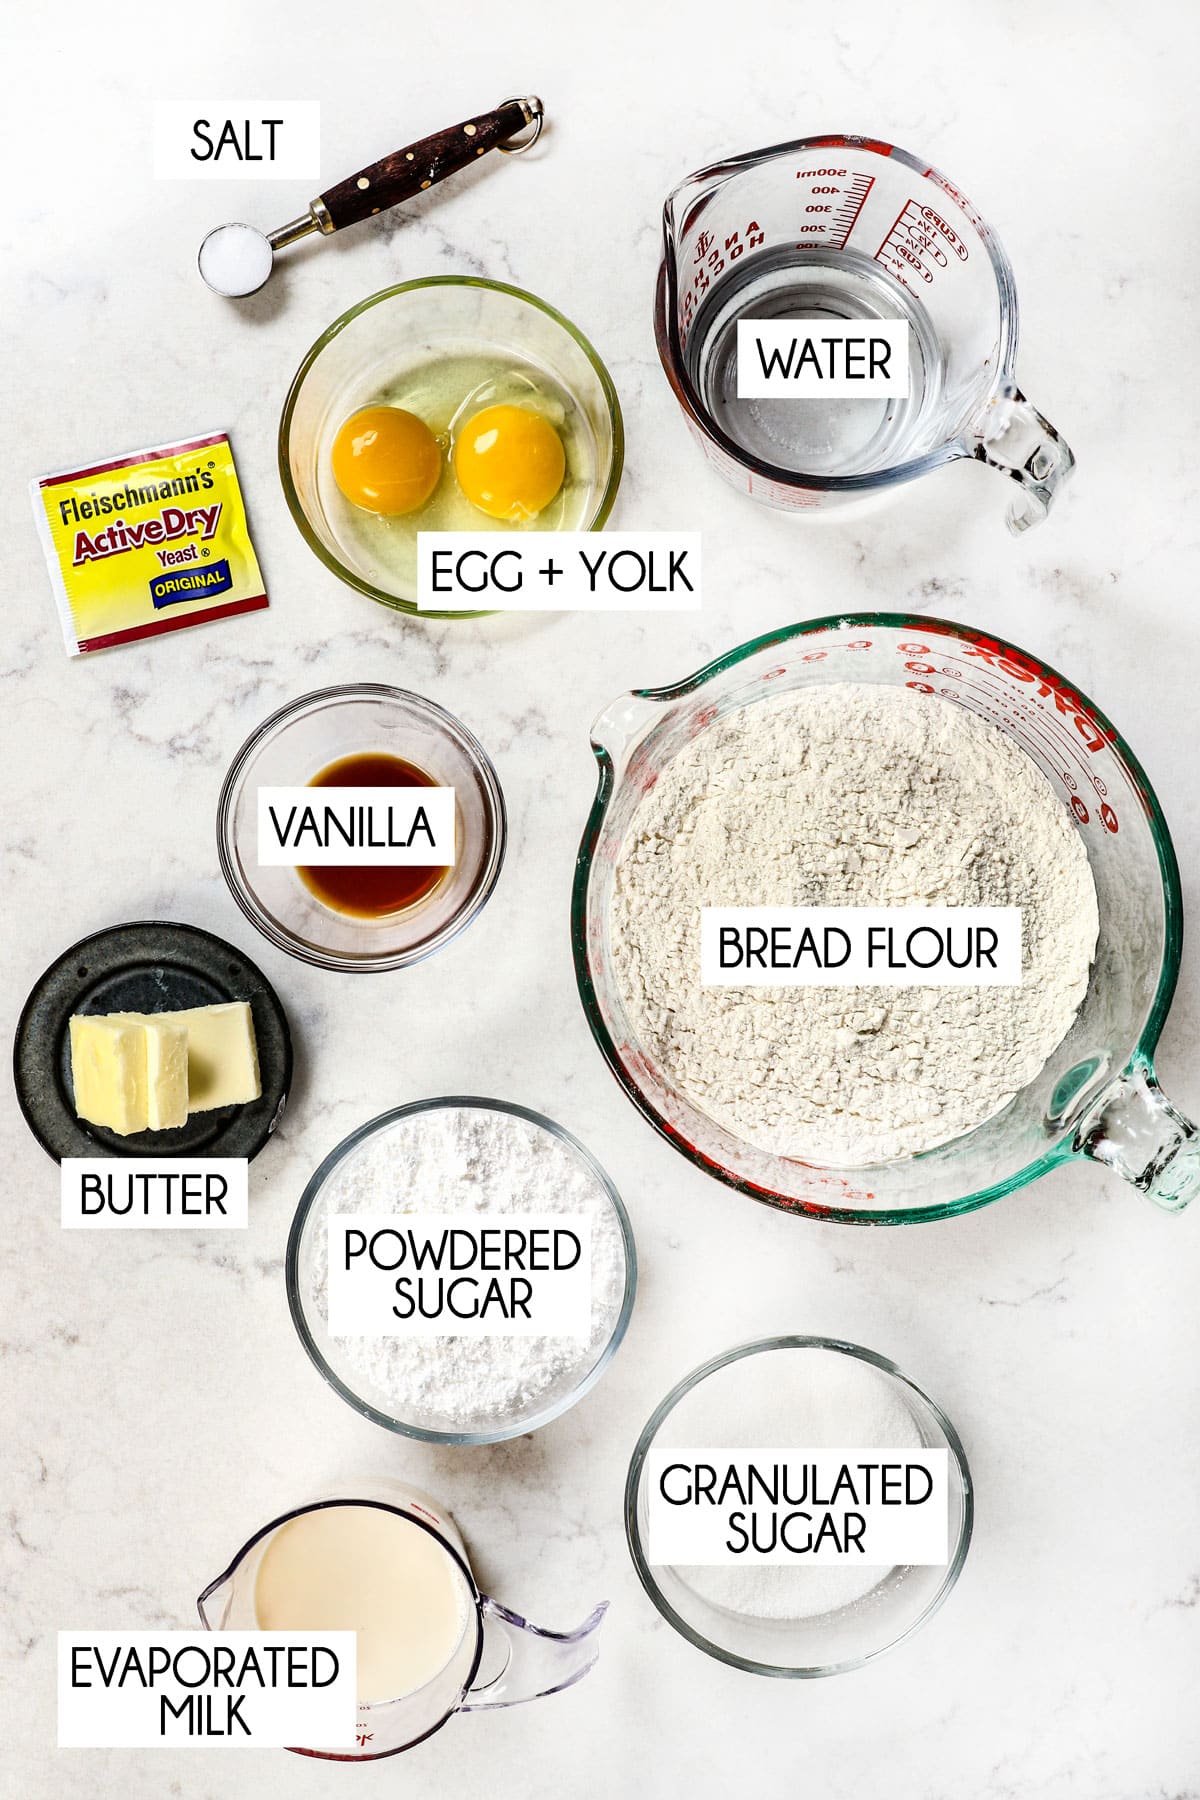 beignet ingredient shot:  bread flour, milk, eggs, yeast, butter, sugar, water, powdered sugar